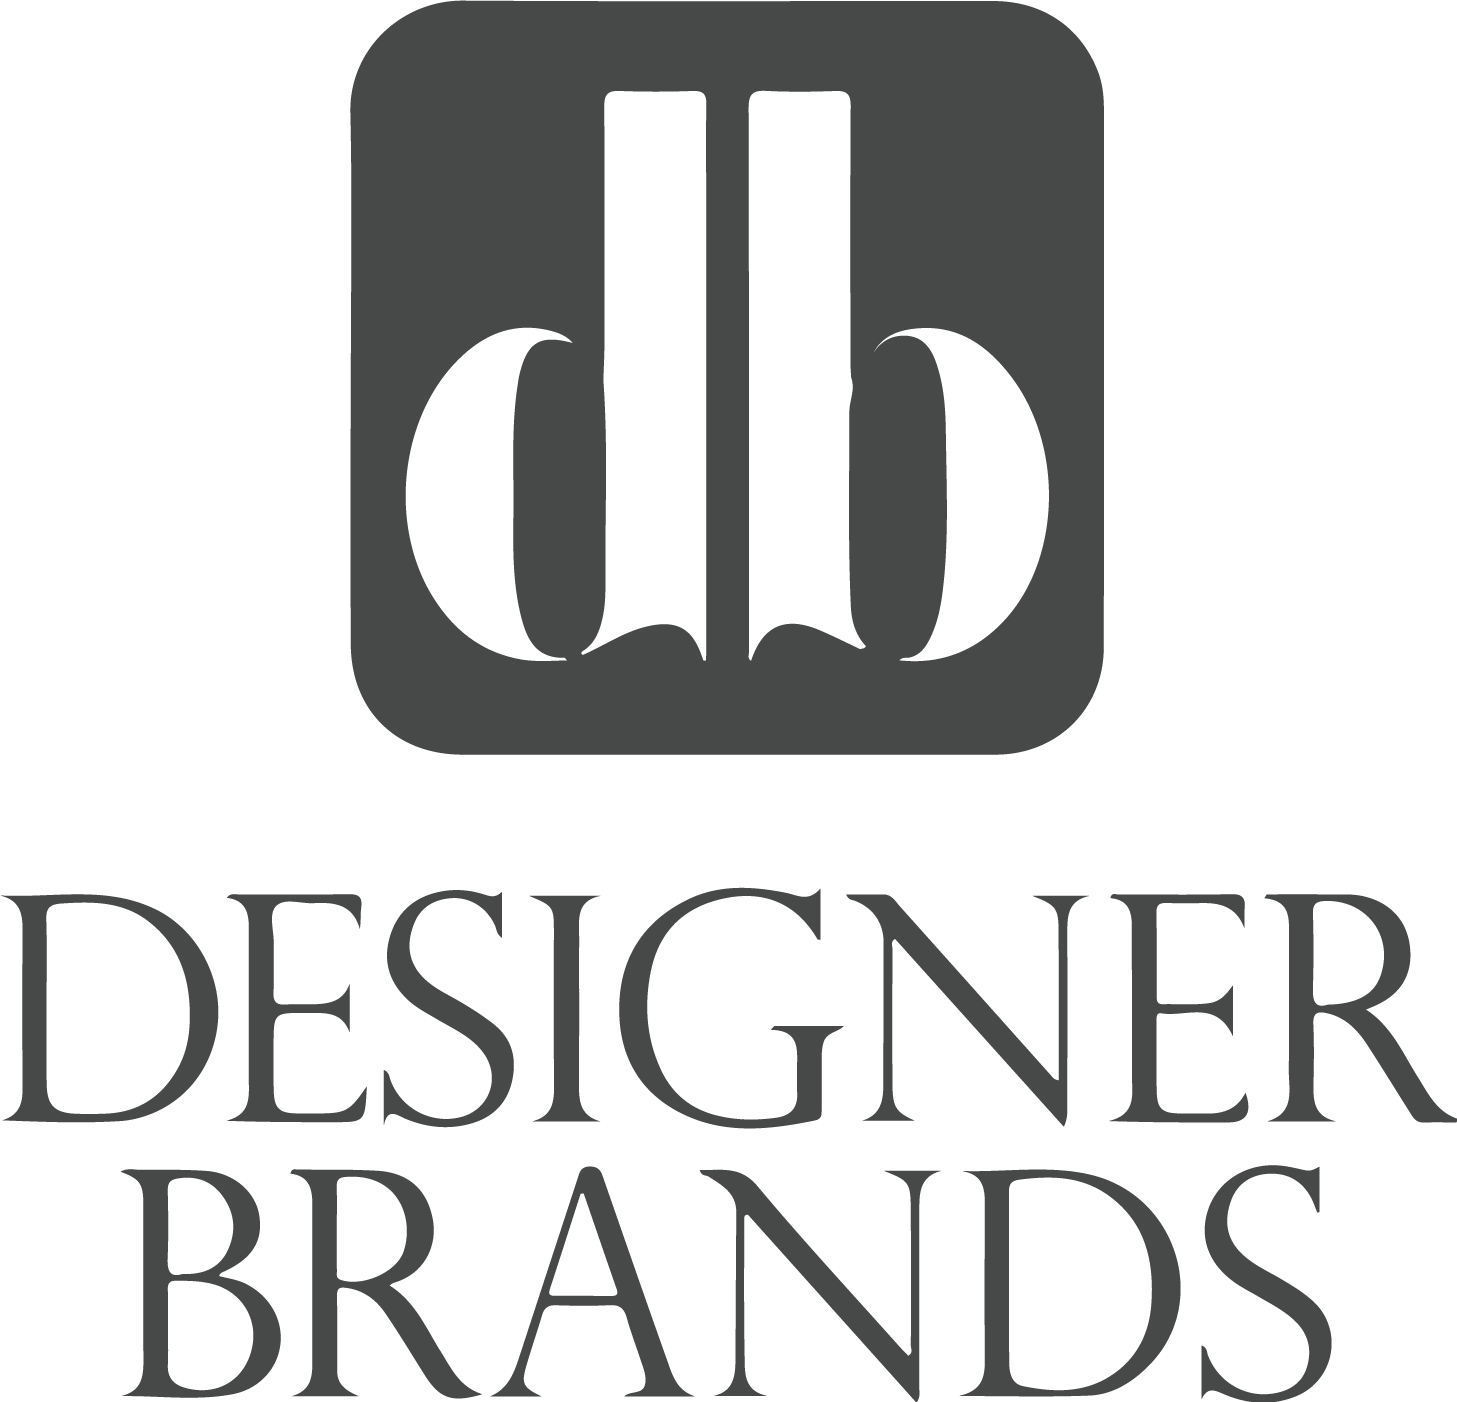 Designer Brands logo in transparent PNG format